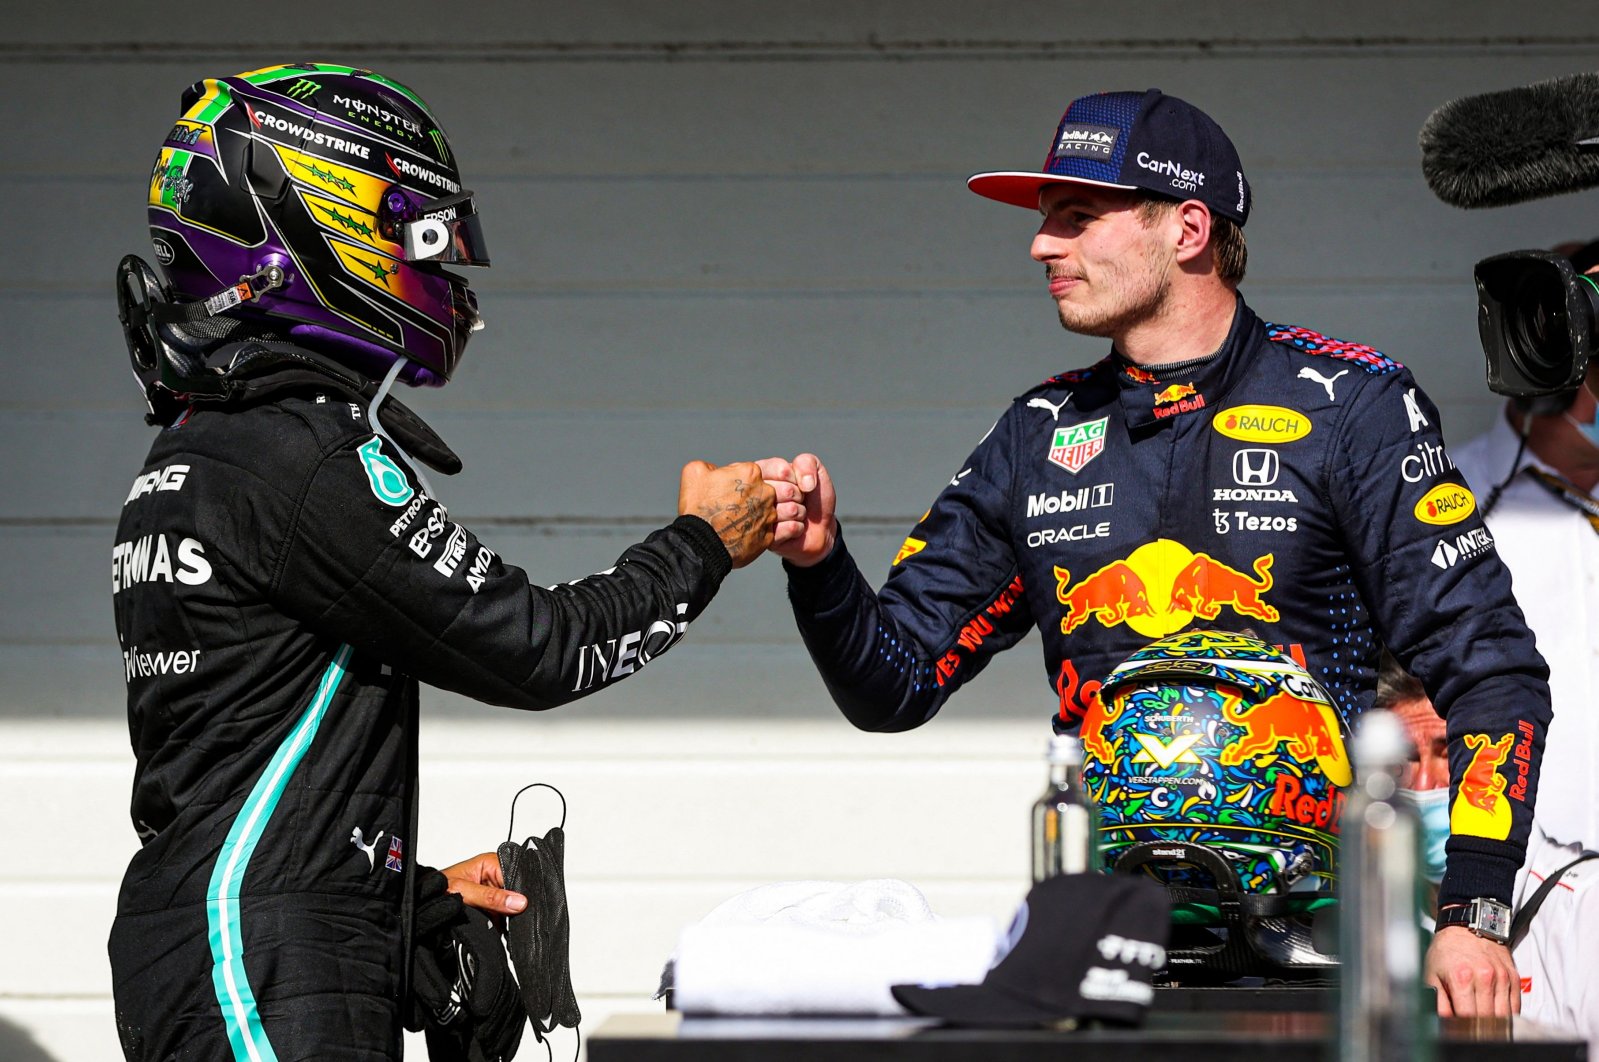 Hamilton bertujuan untuk mengatur pertempuran balapan terakhir saat Verstappen mengincar gelar F1